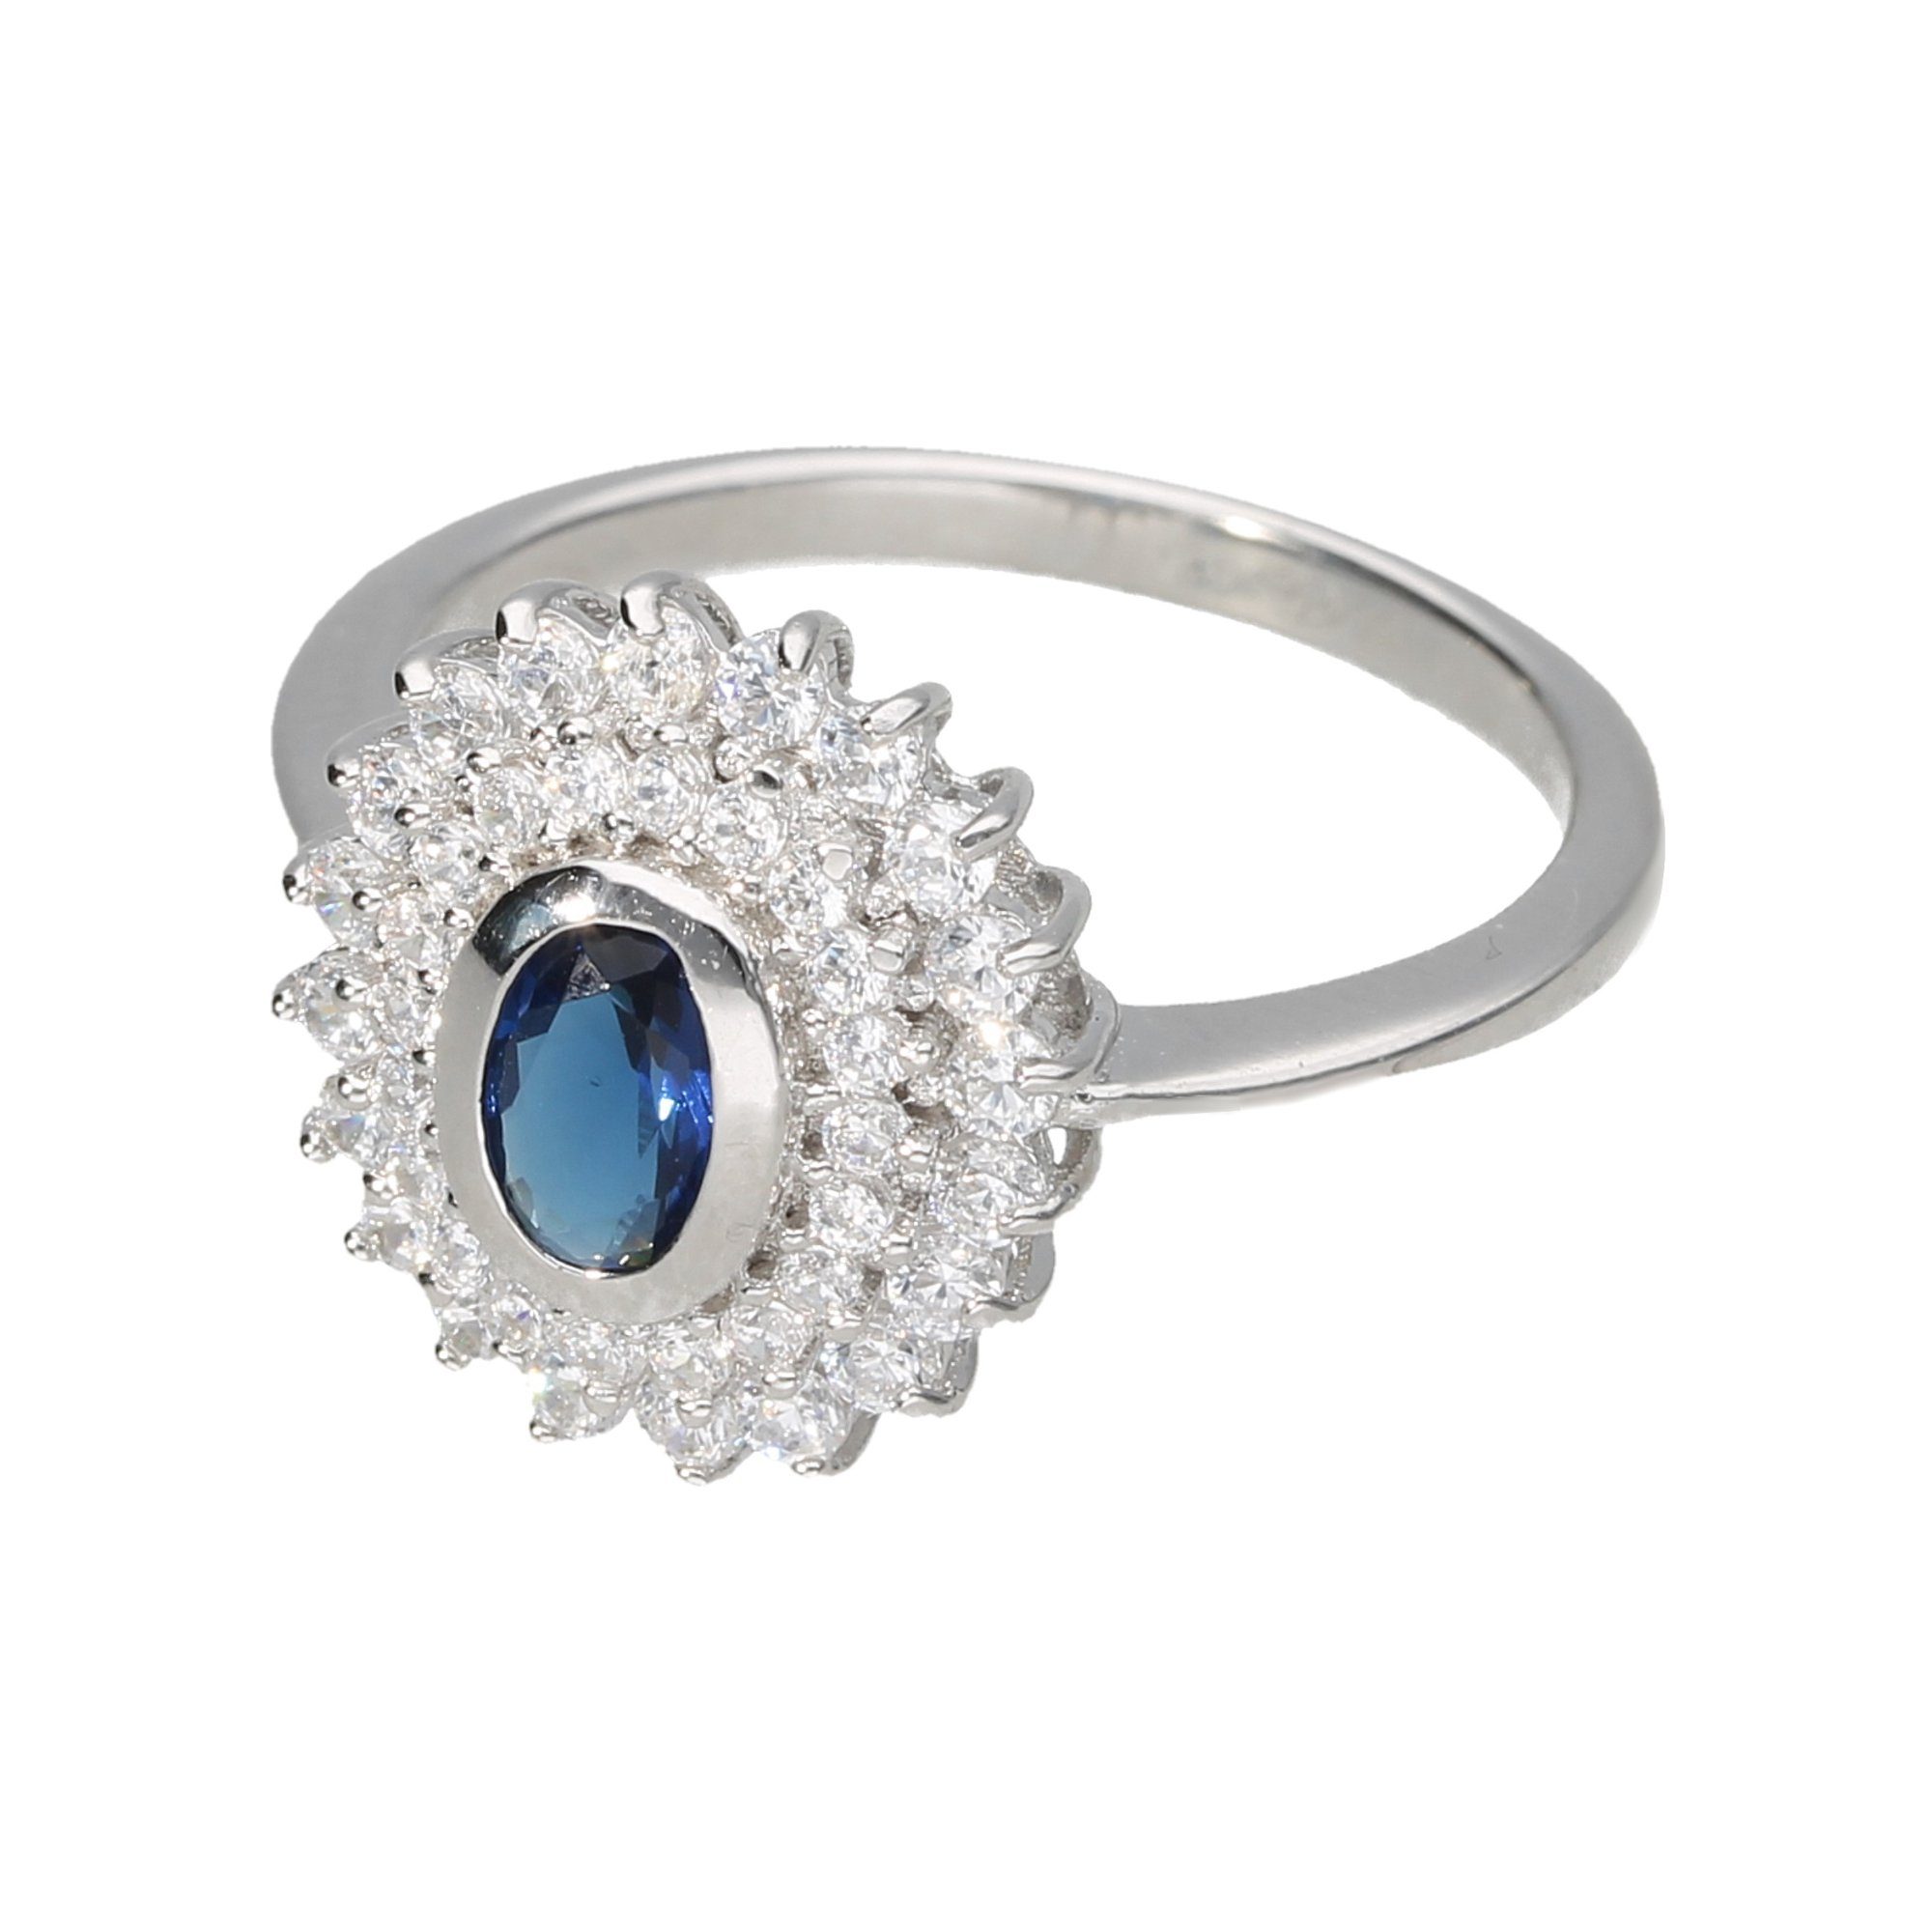 Damen Schmuck Smart Jewel Silberring mit Zirkonia und dunkelblauem Kristallstein, Silber 925